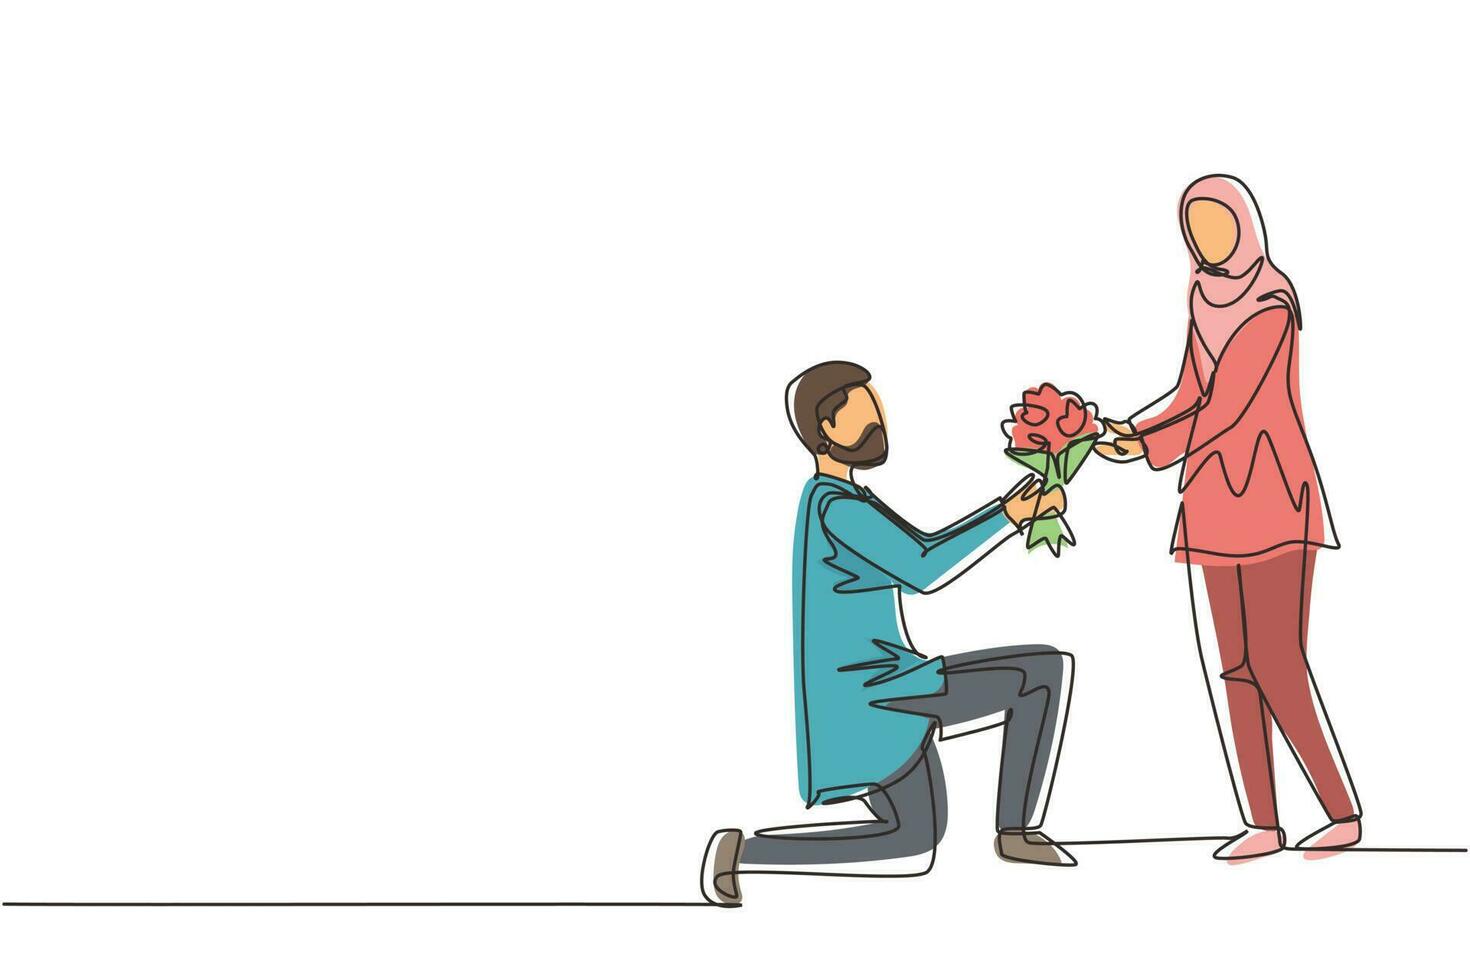 única linha contínua desenho homem árabe no joelho fazendo proposta de casamento para mulher com buquê. menino apaixonado dando flores. casal feliz se preparando para o casamento. vetor de design gráfico de desenho de uma linha